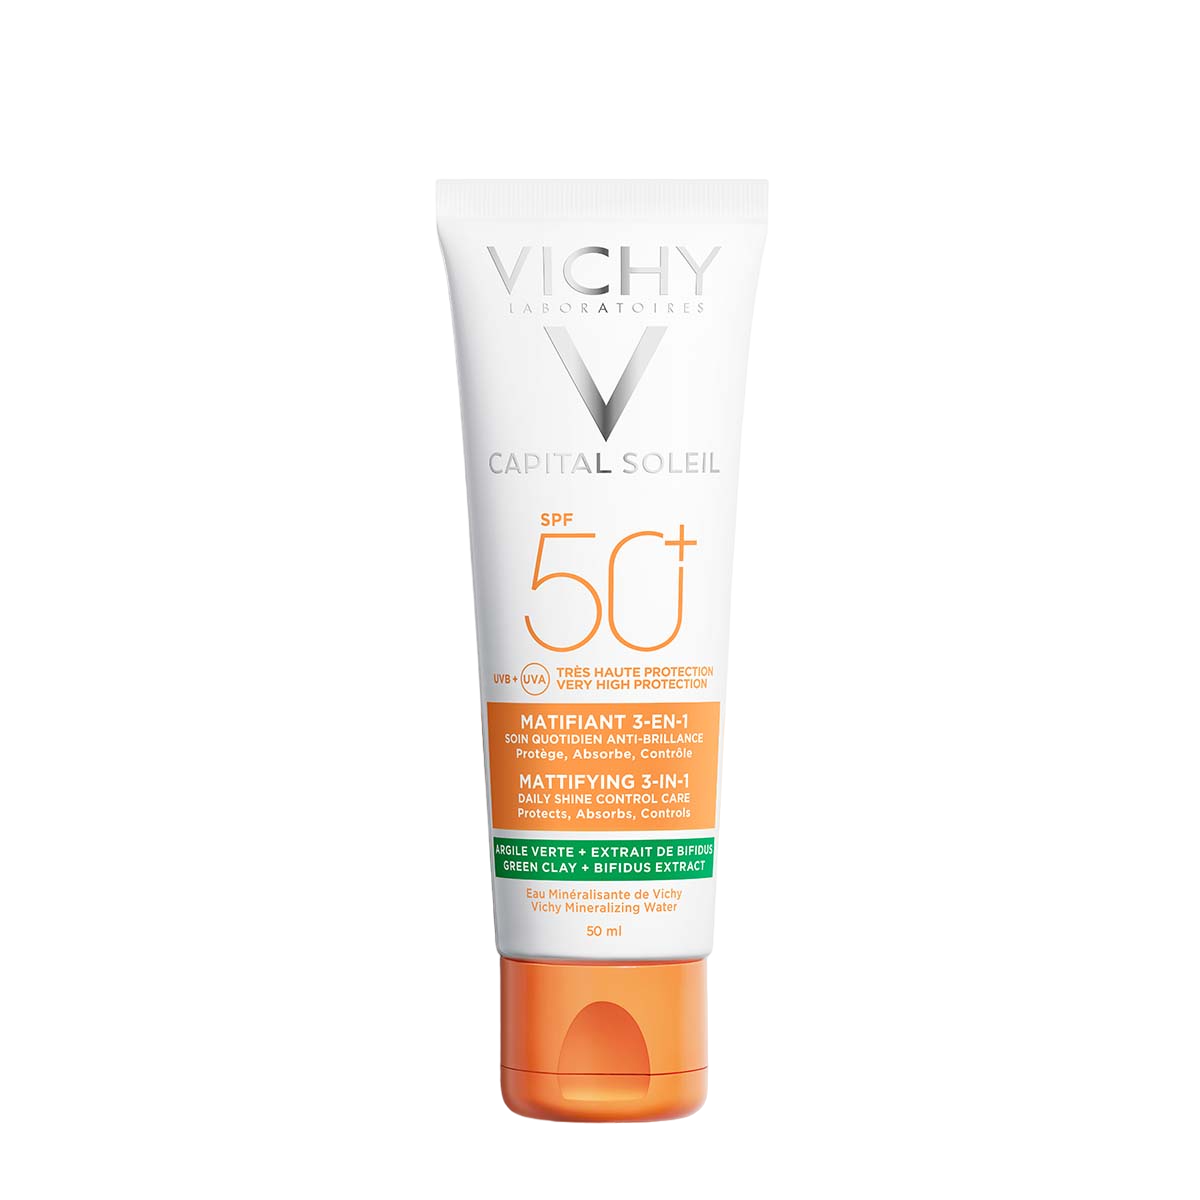 Сонцезахисний крем матовий 3в1 Vichy Capital Soleil Mattifying для жирної, проблемної шкіри, SPF50+, 50 мл (MB232700) - фото 2